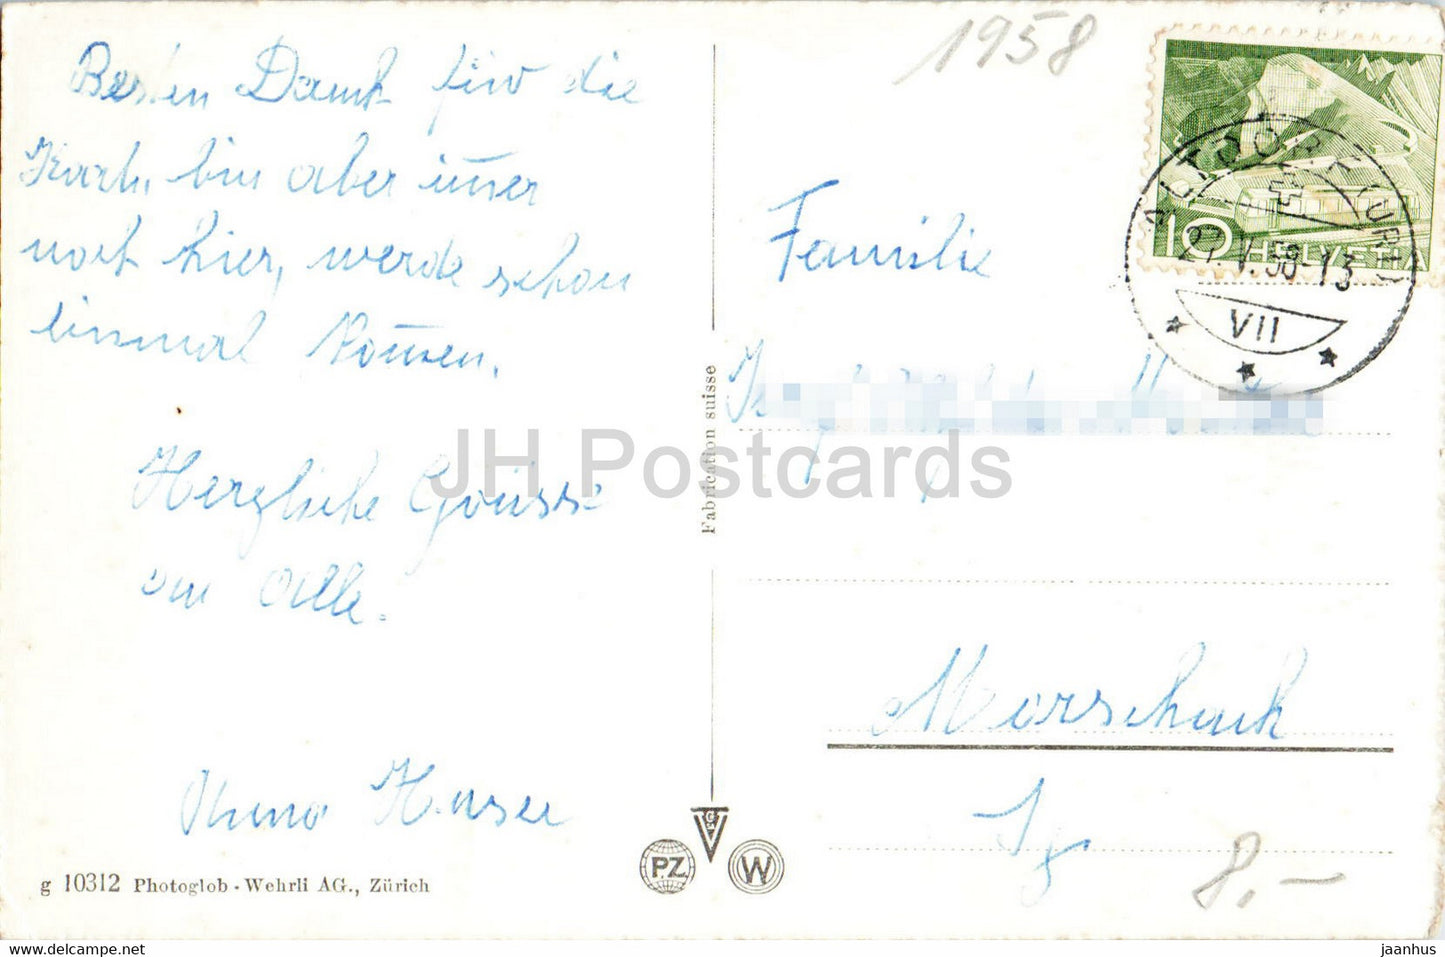 Axenstrasse am Vierwaldstattersee mit Glitschen und Urirotstock - 10312 - old postcard - 1958 - Switzerland - used